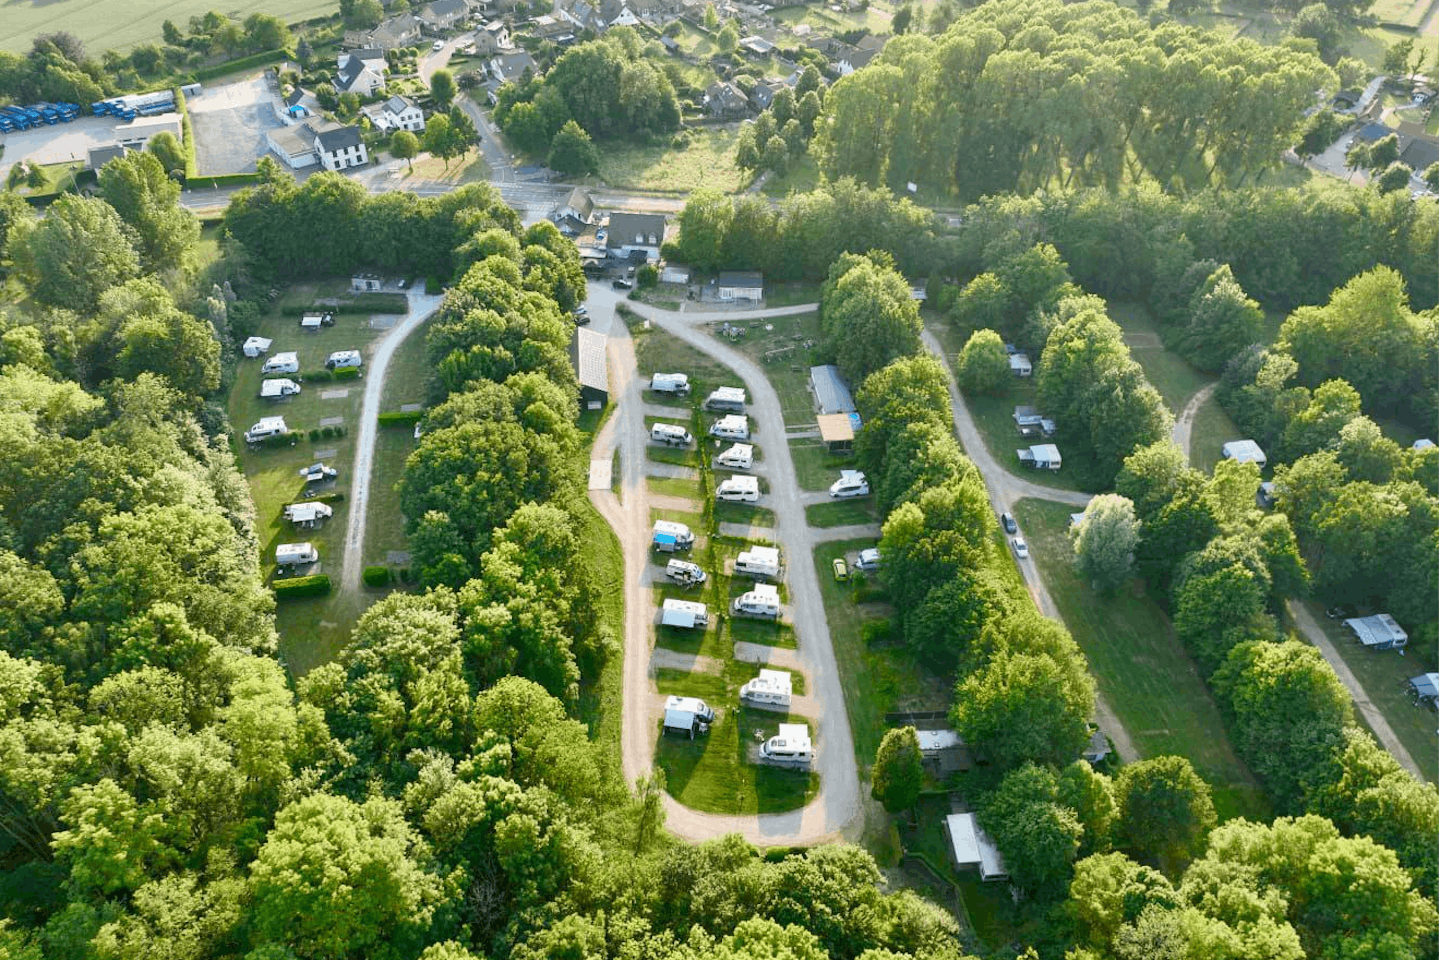 Vodatent @ Camping de Boskant  - Luftaufnahme der Standplatzwiese auf dem Campingplatz